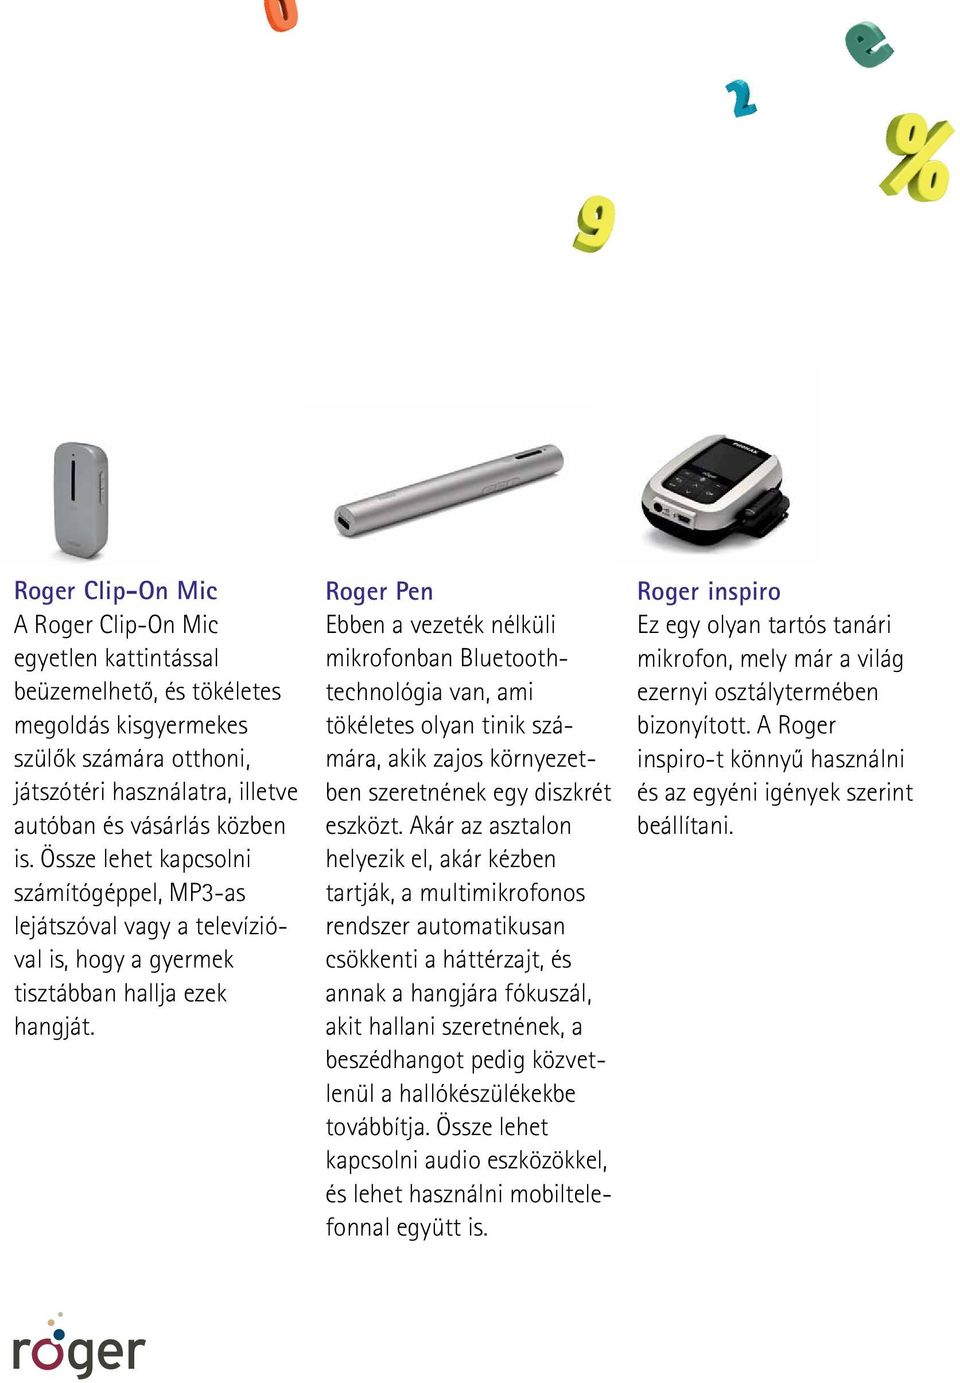 Roger Pen Ebben a vezeték nélküli mikrofonban Bluetoothtechnológia van, ami töké letes olyan tinik számára, akik zajos környezetben szeretnének egy diszkrét eszközt.